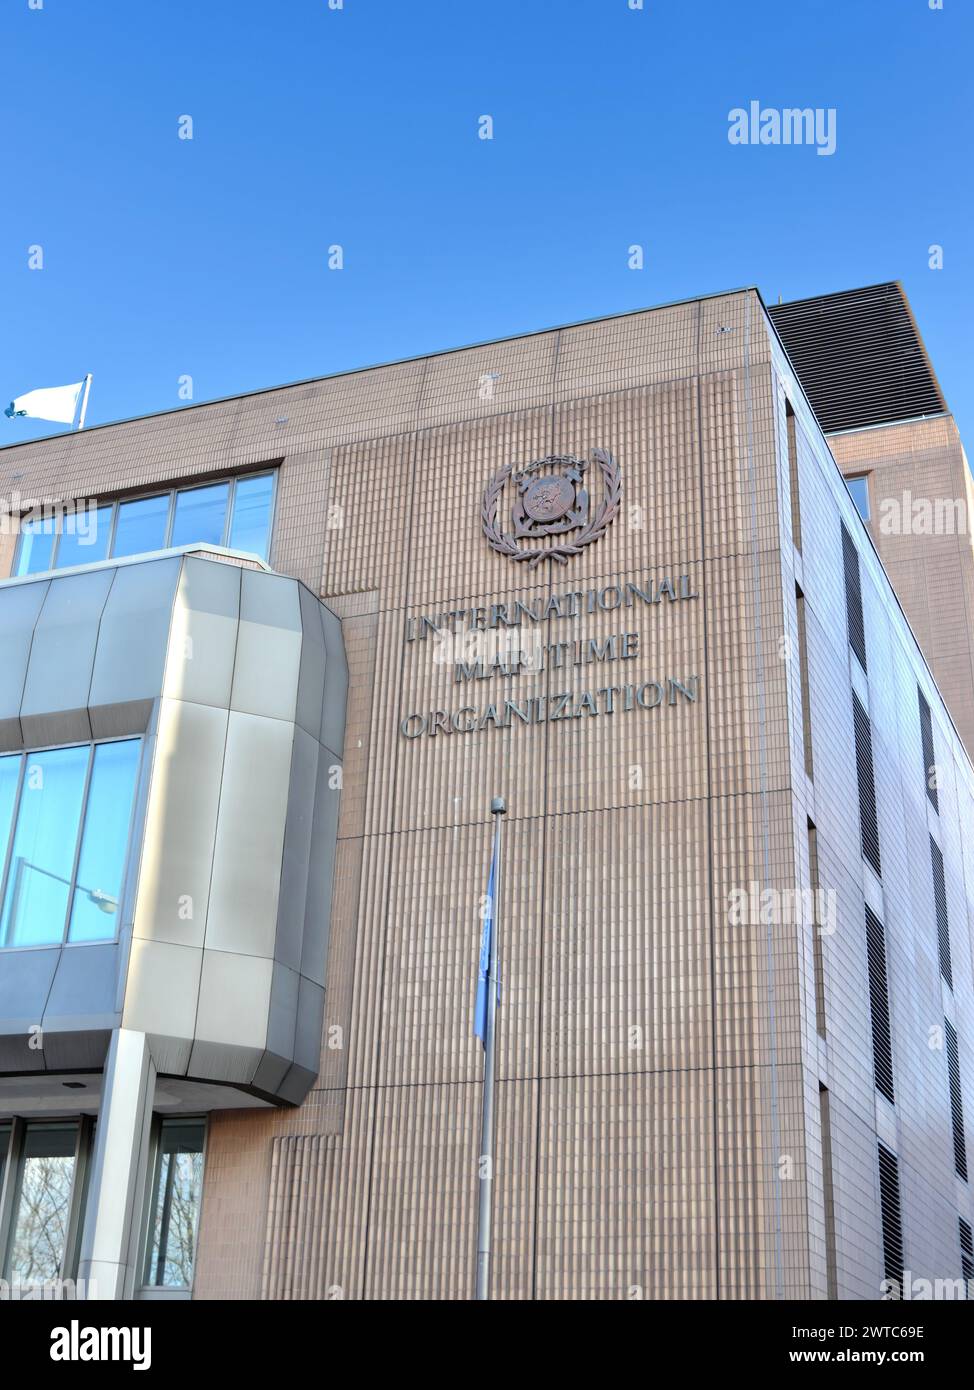 Sitz der Internationalen Seeschifffahrtsorganisation (IMO) in London, einer Sonderorganisation der Vereinten Nationen, die für die Regulierung der Schifffahrt zuständig ist Stockfoto